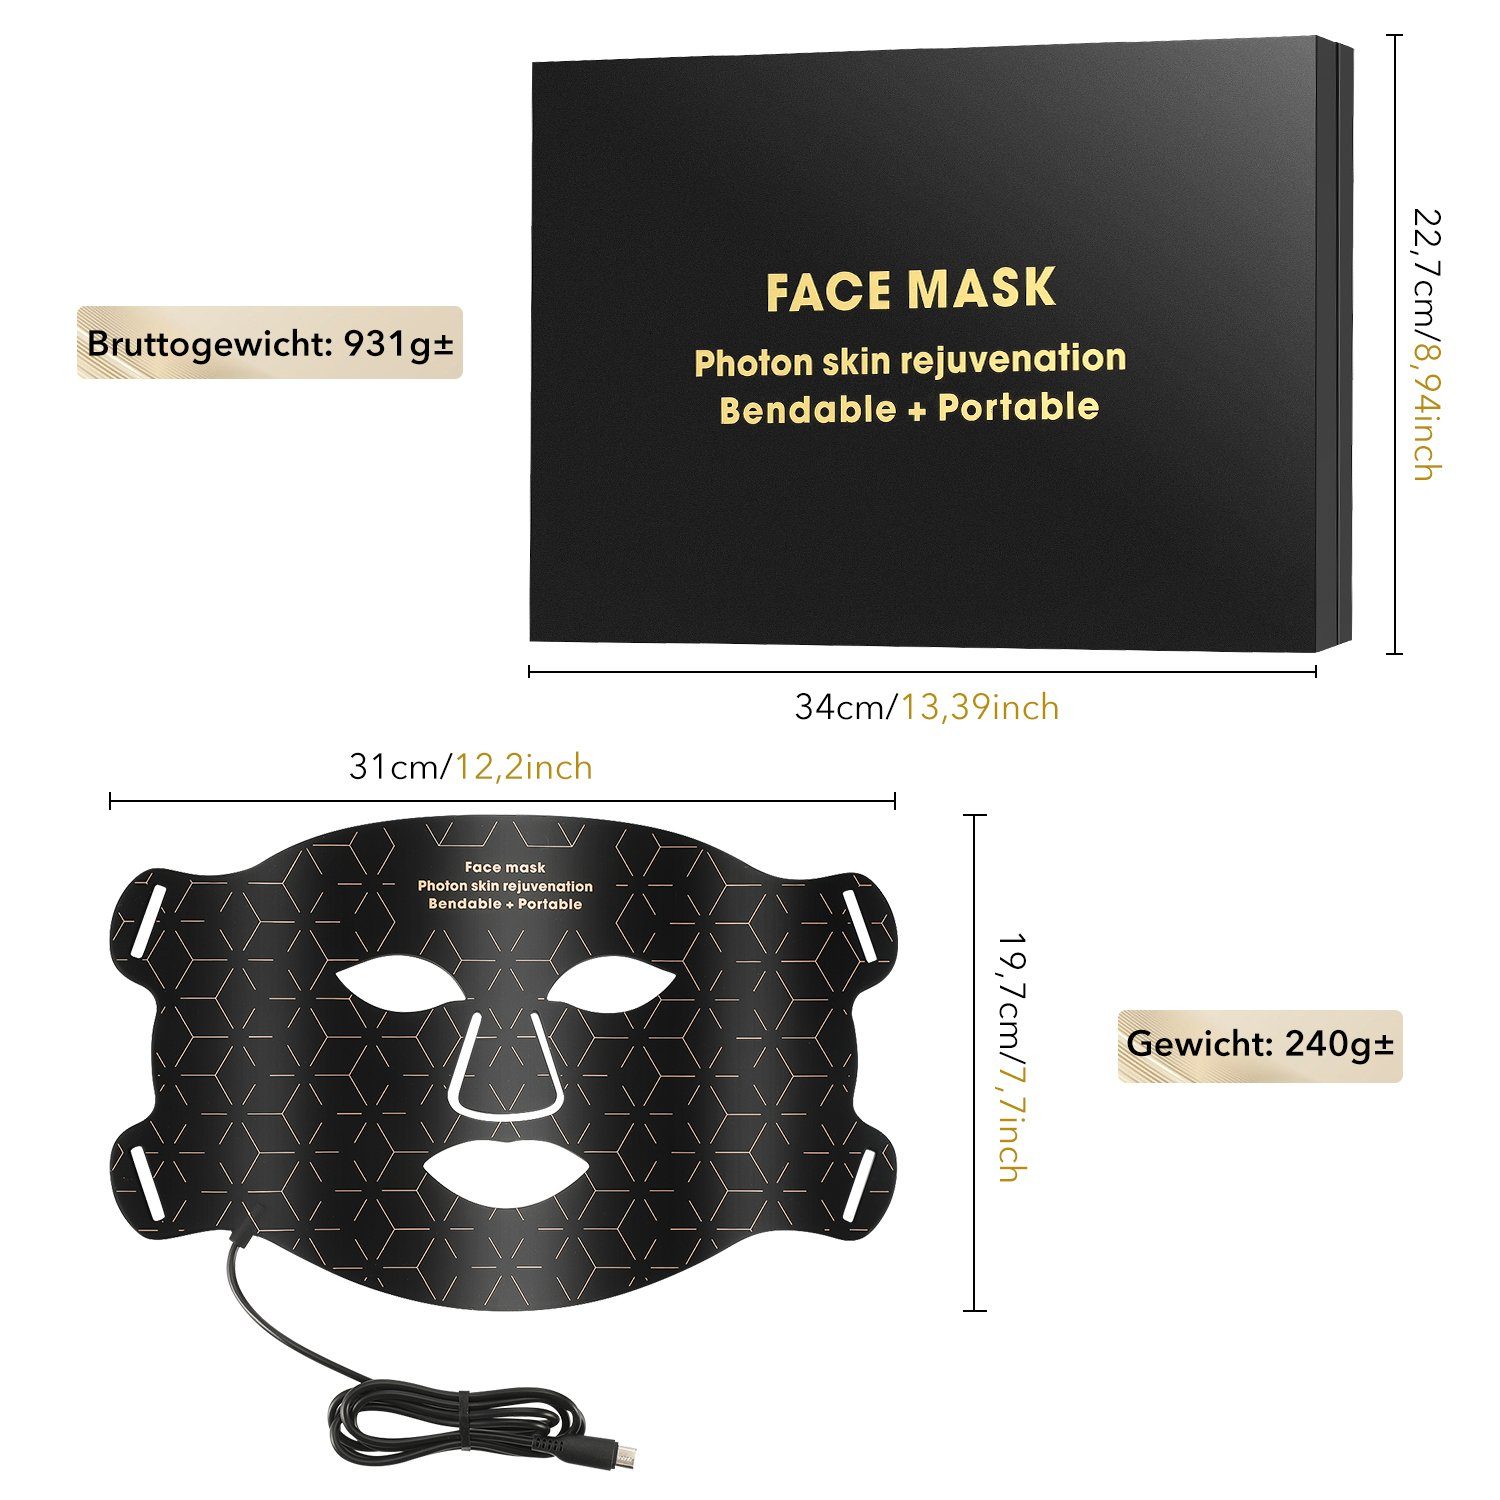 oyajia Kosmetikbehandlungsgerät LED Gesichtsmasken Lichttherapie,Photonen-Hautverjüngung Anti Gesicht 4 Falten maske, Anti-Aging Farben Akne Hautverjüngung Anti für